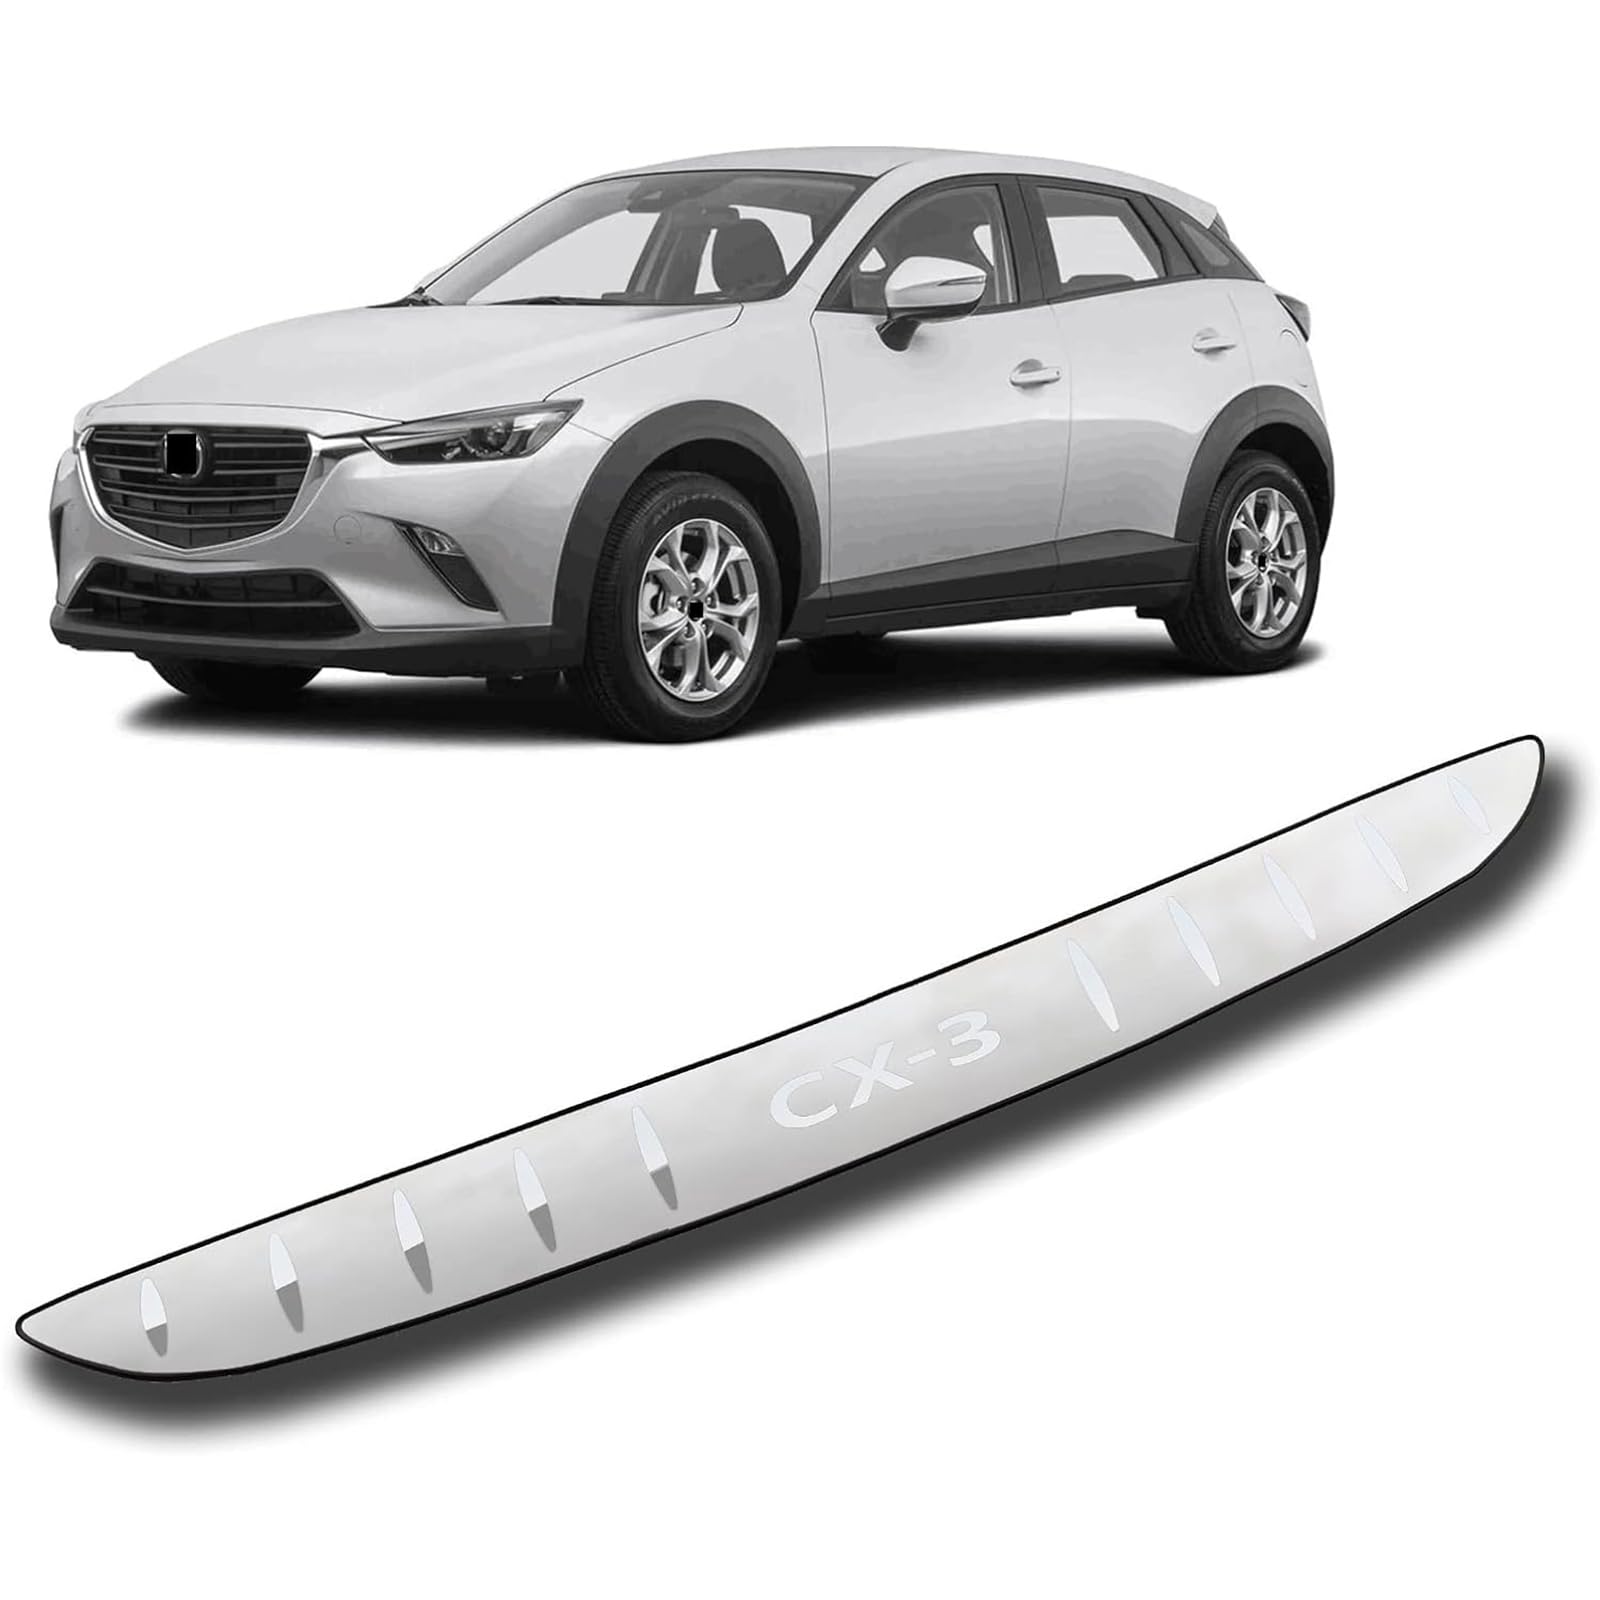 Ladekantenschutz Stoßstangenschutz für Mazda CX3 2016-2021,Kofferraum Kratzschutz Selbstklebend Chrom Edelstahl von BOTIZR